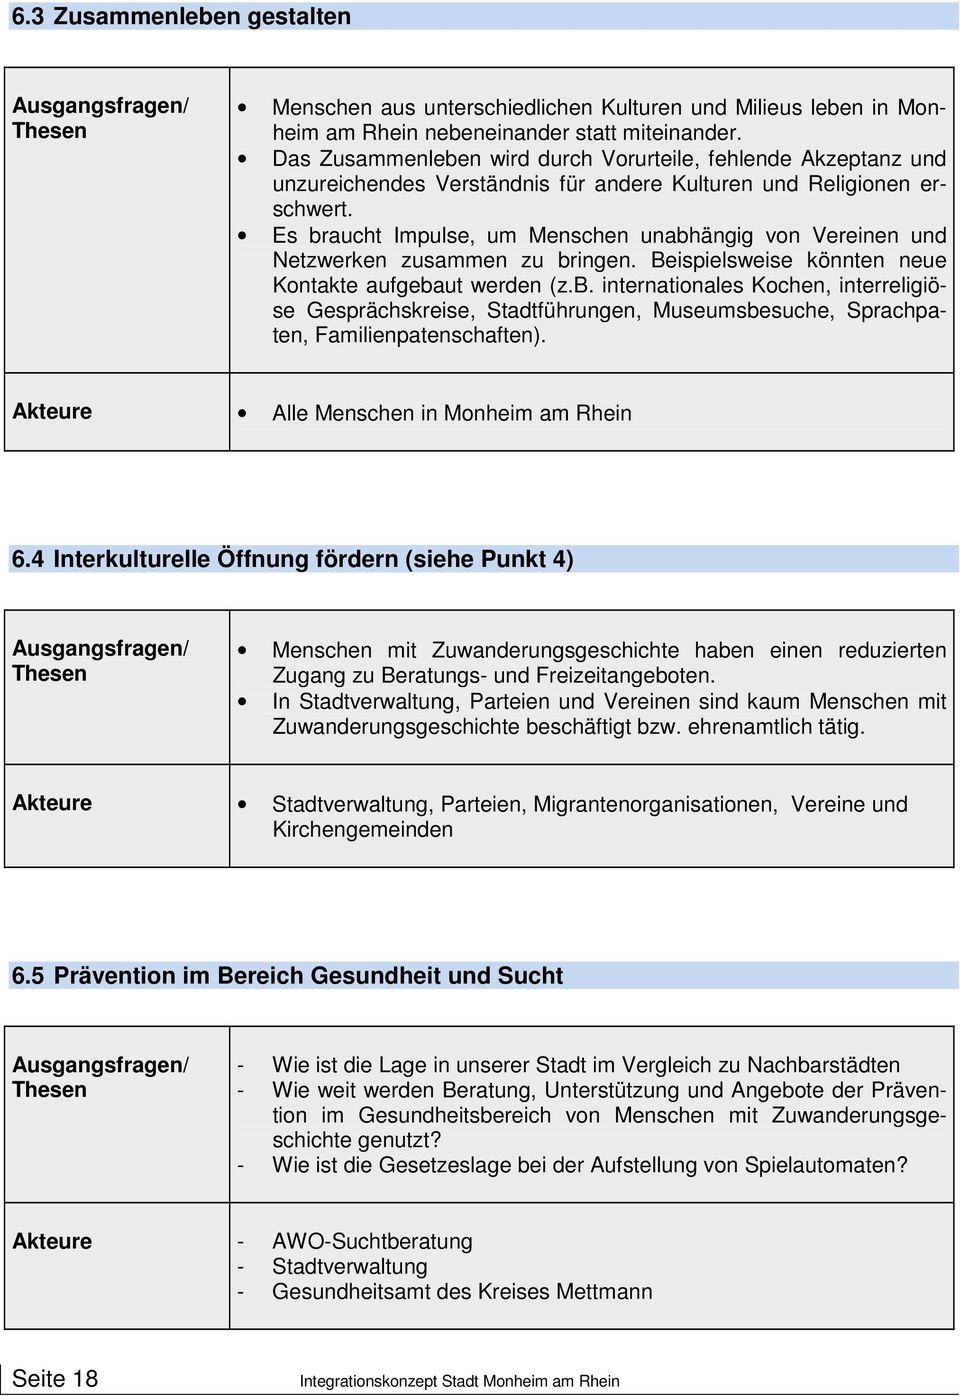 Auflage April 2012 Das Integrationskonzept wurde vom Rat der Stadt Monheim am Rhein in seiner Sitzung am 28. März 2012 einstimmig verabschiedet.